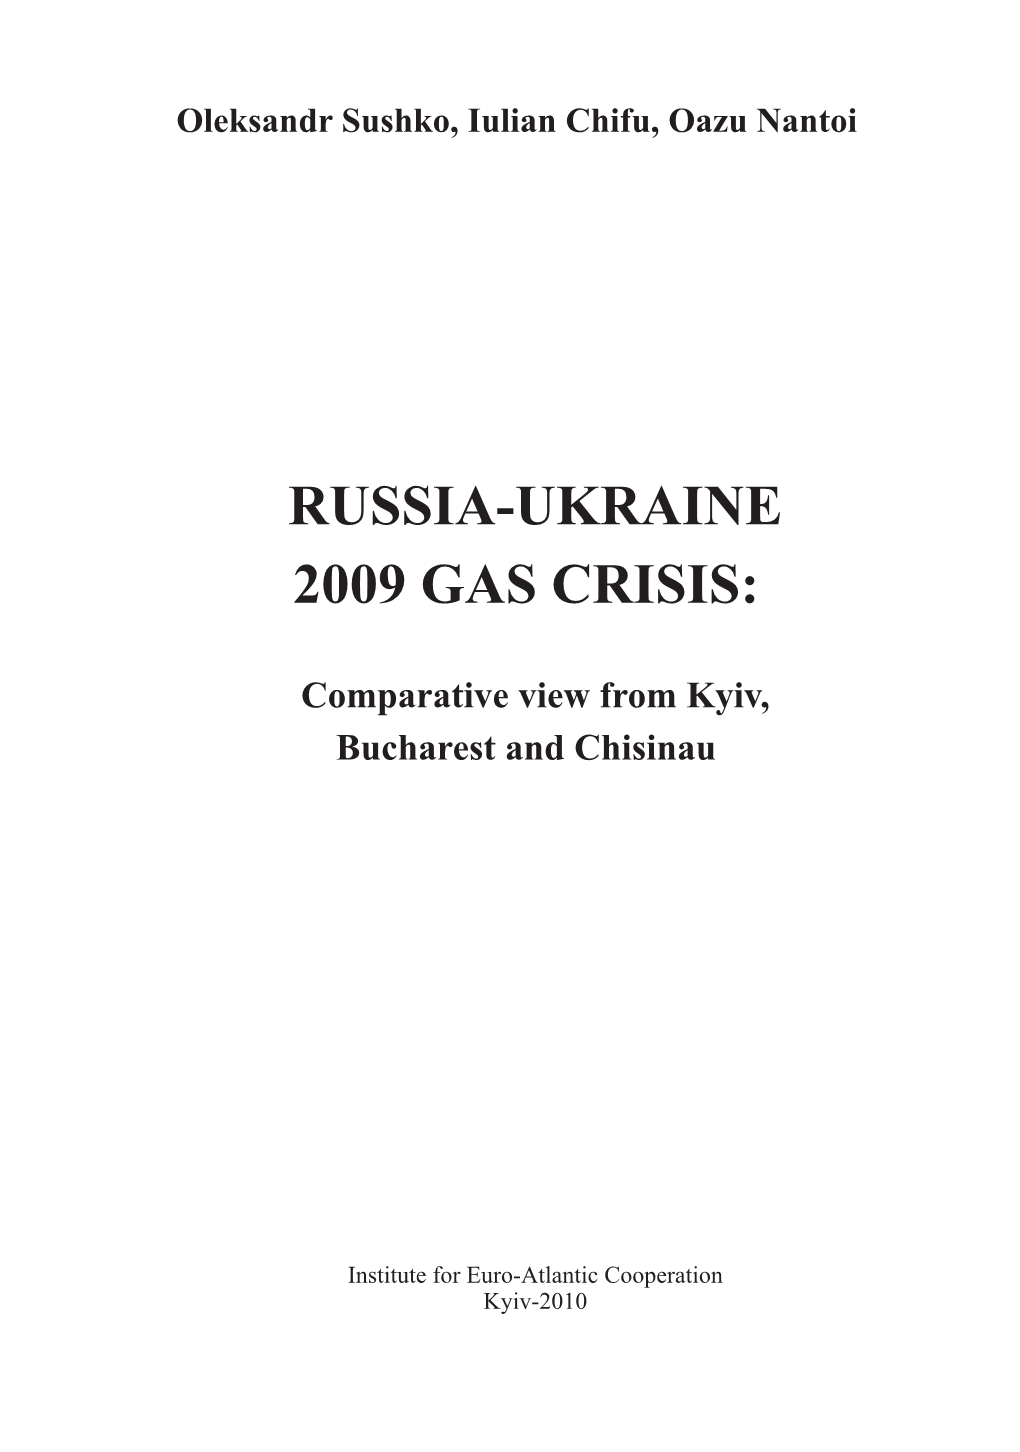 Russia-Ukraine 2009 Gas Crisis